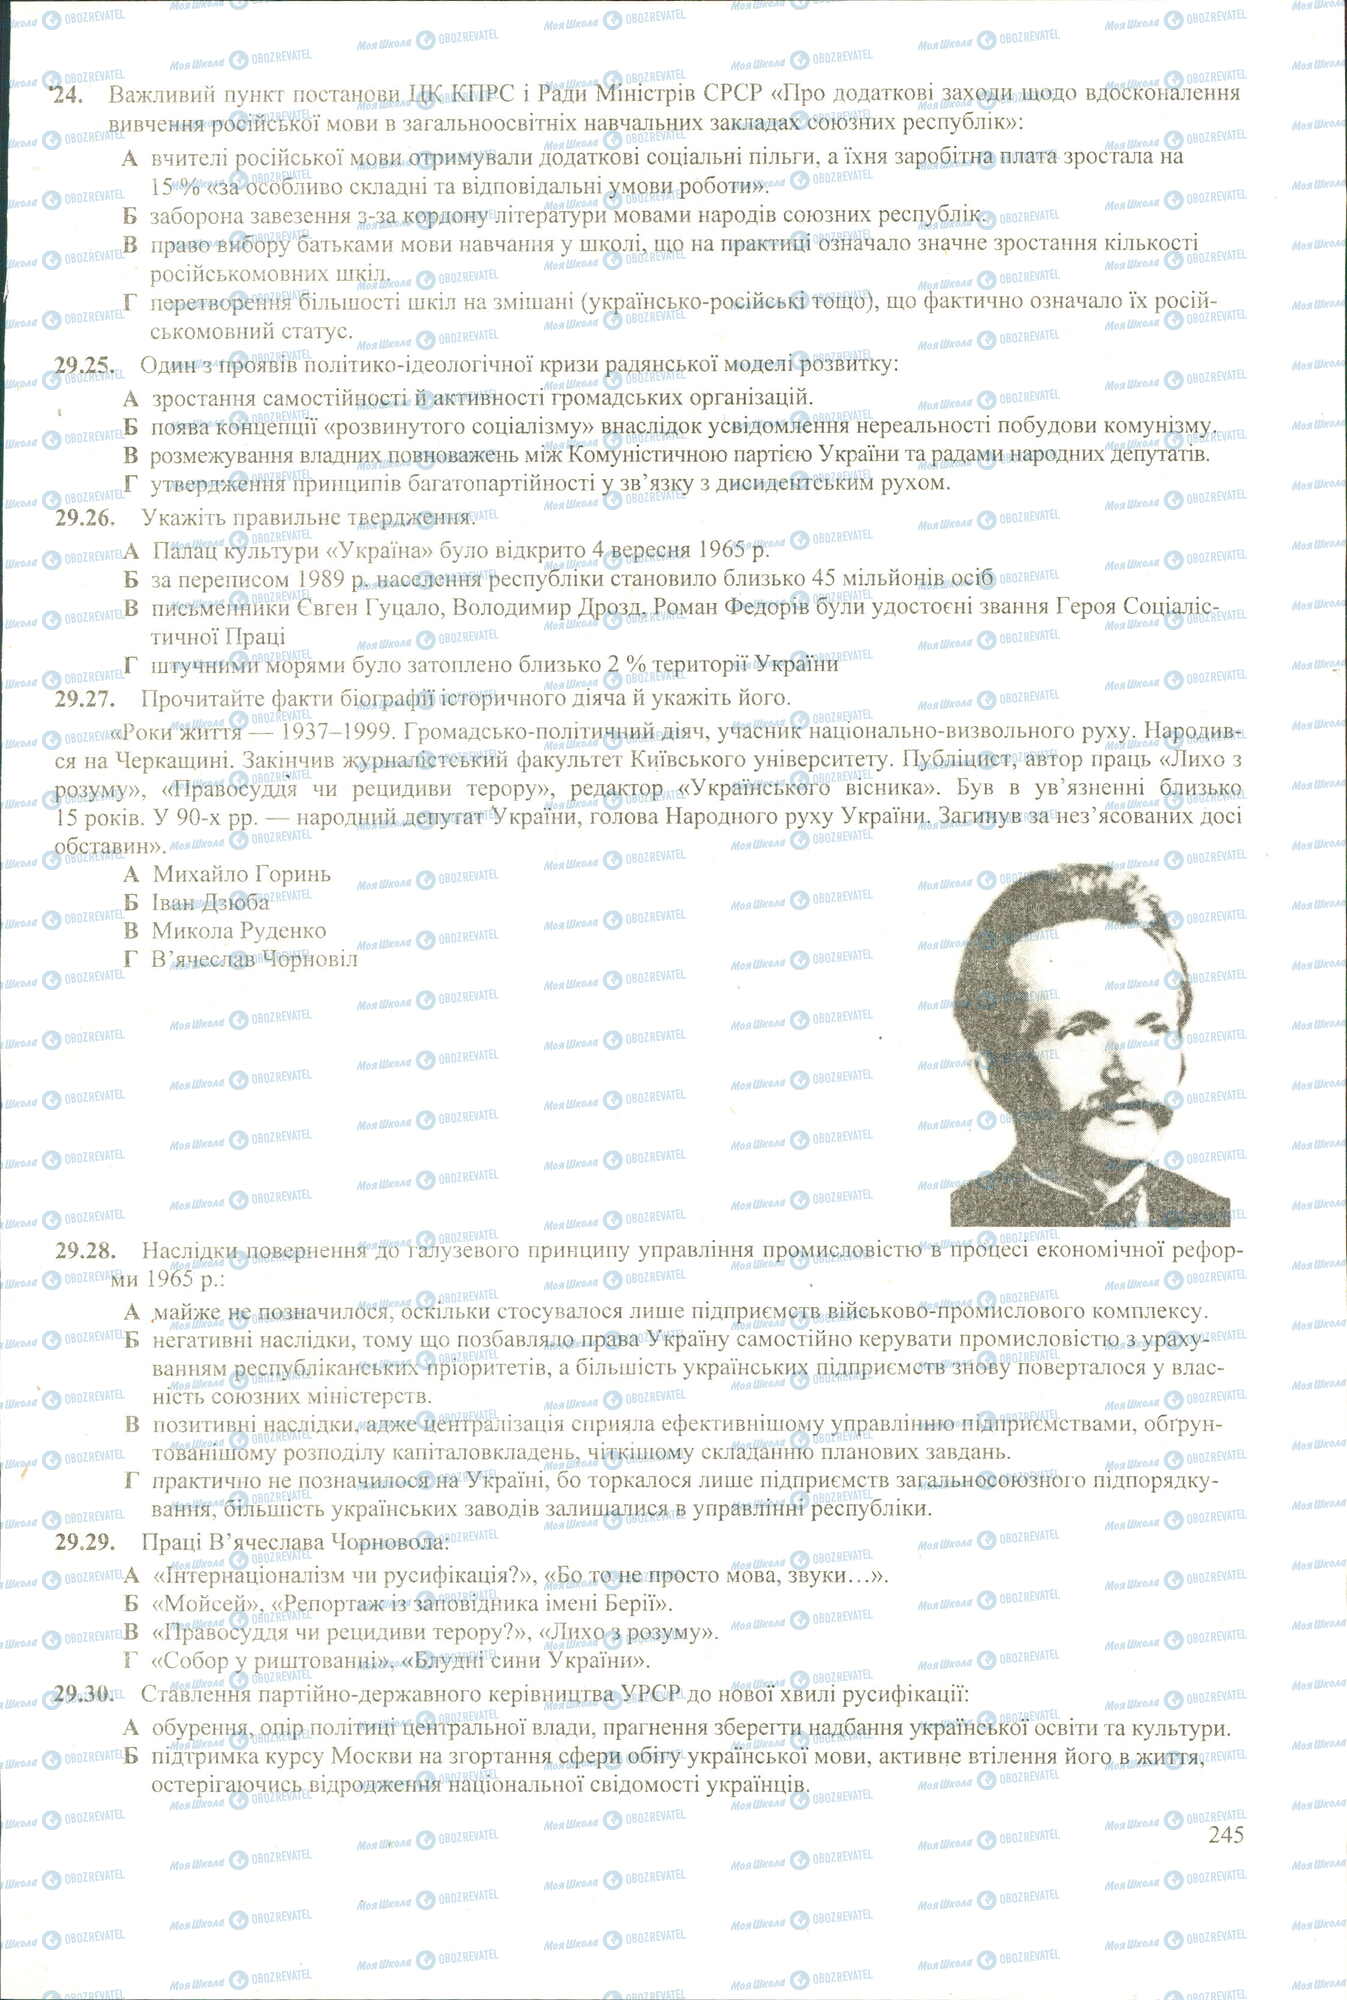 ЗНО История Украины 11 класс страница 24-30